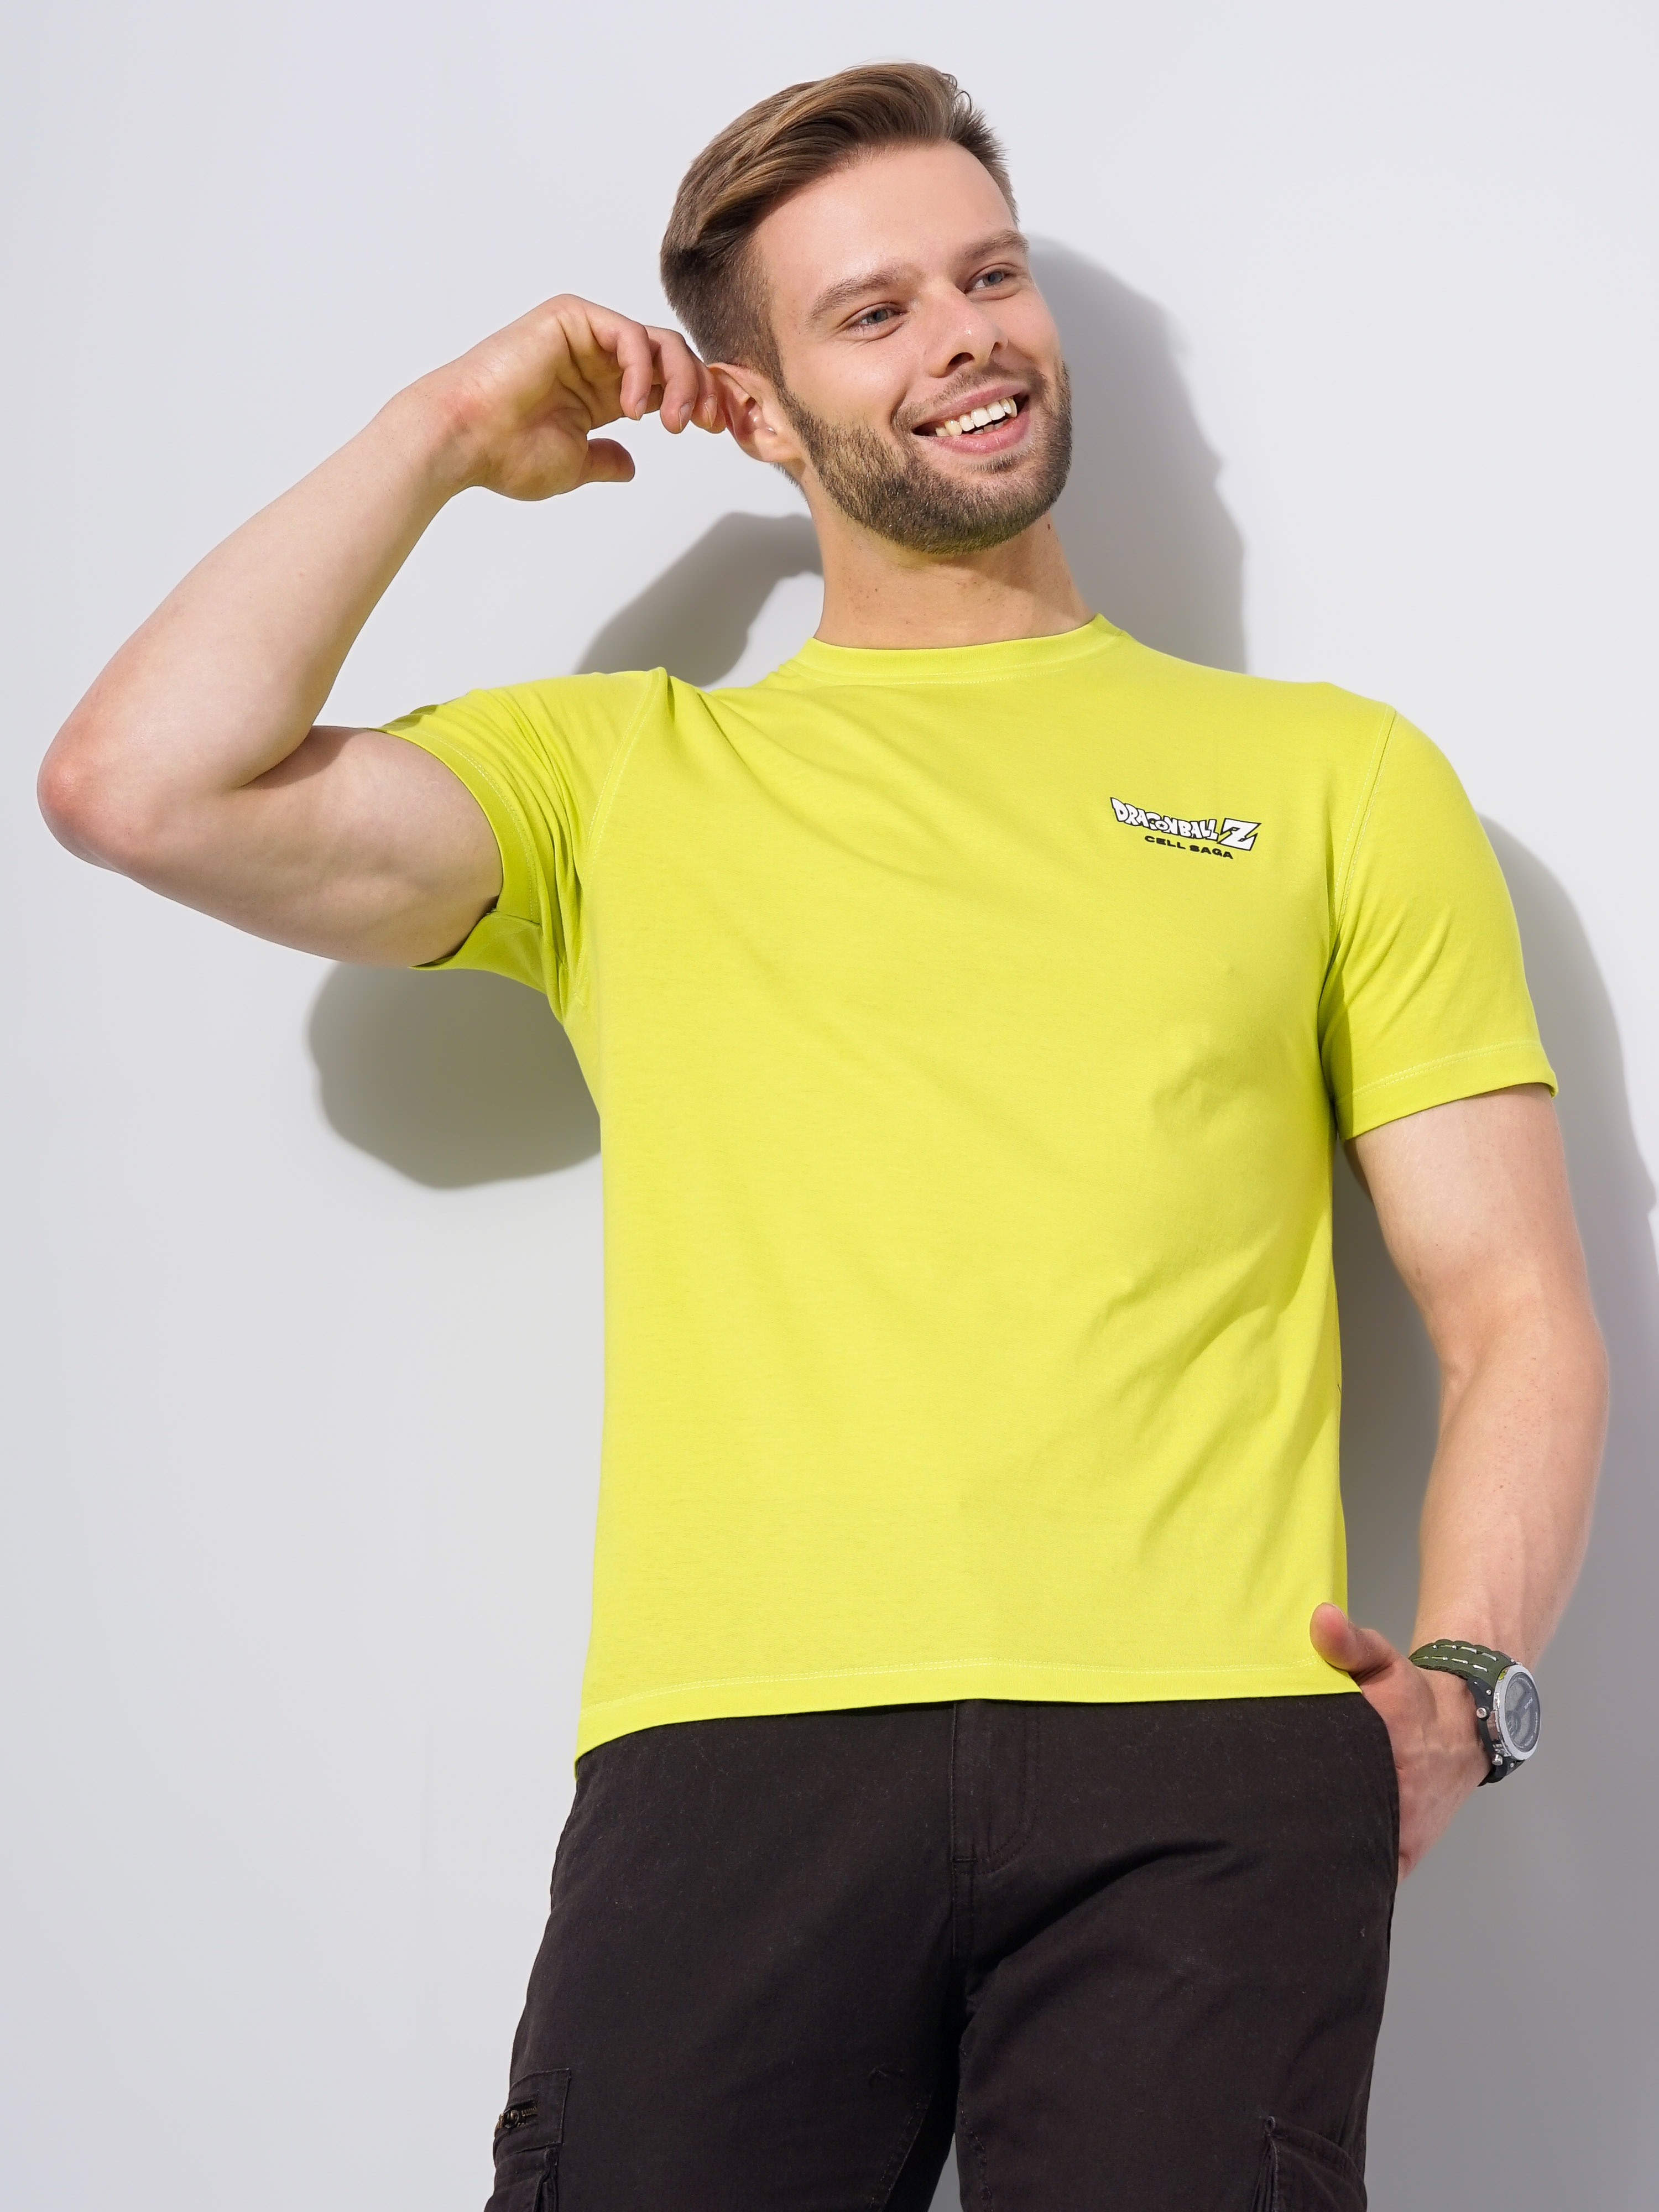 Men's Yellow Graphics Regular T-Shirts